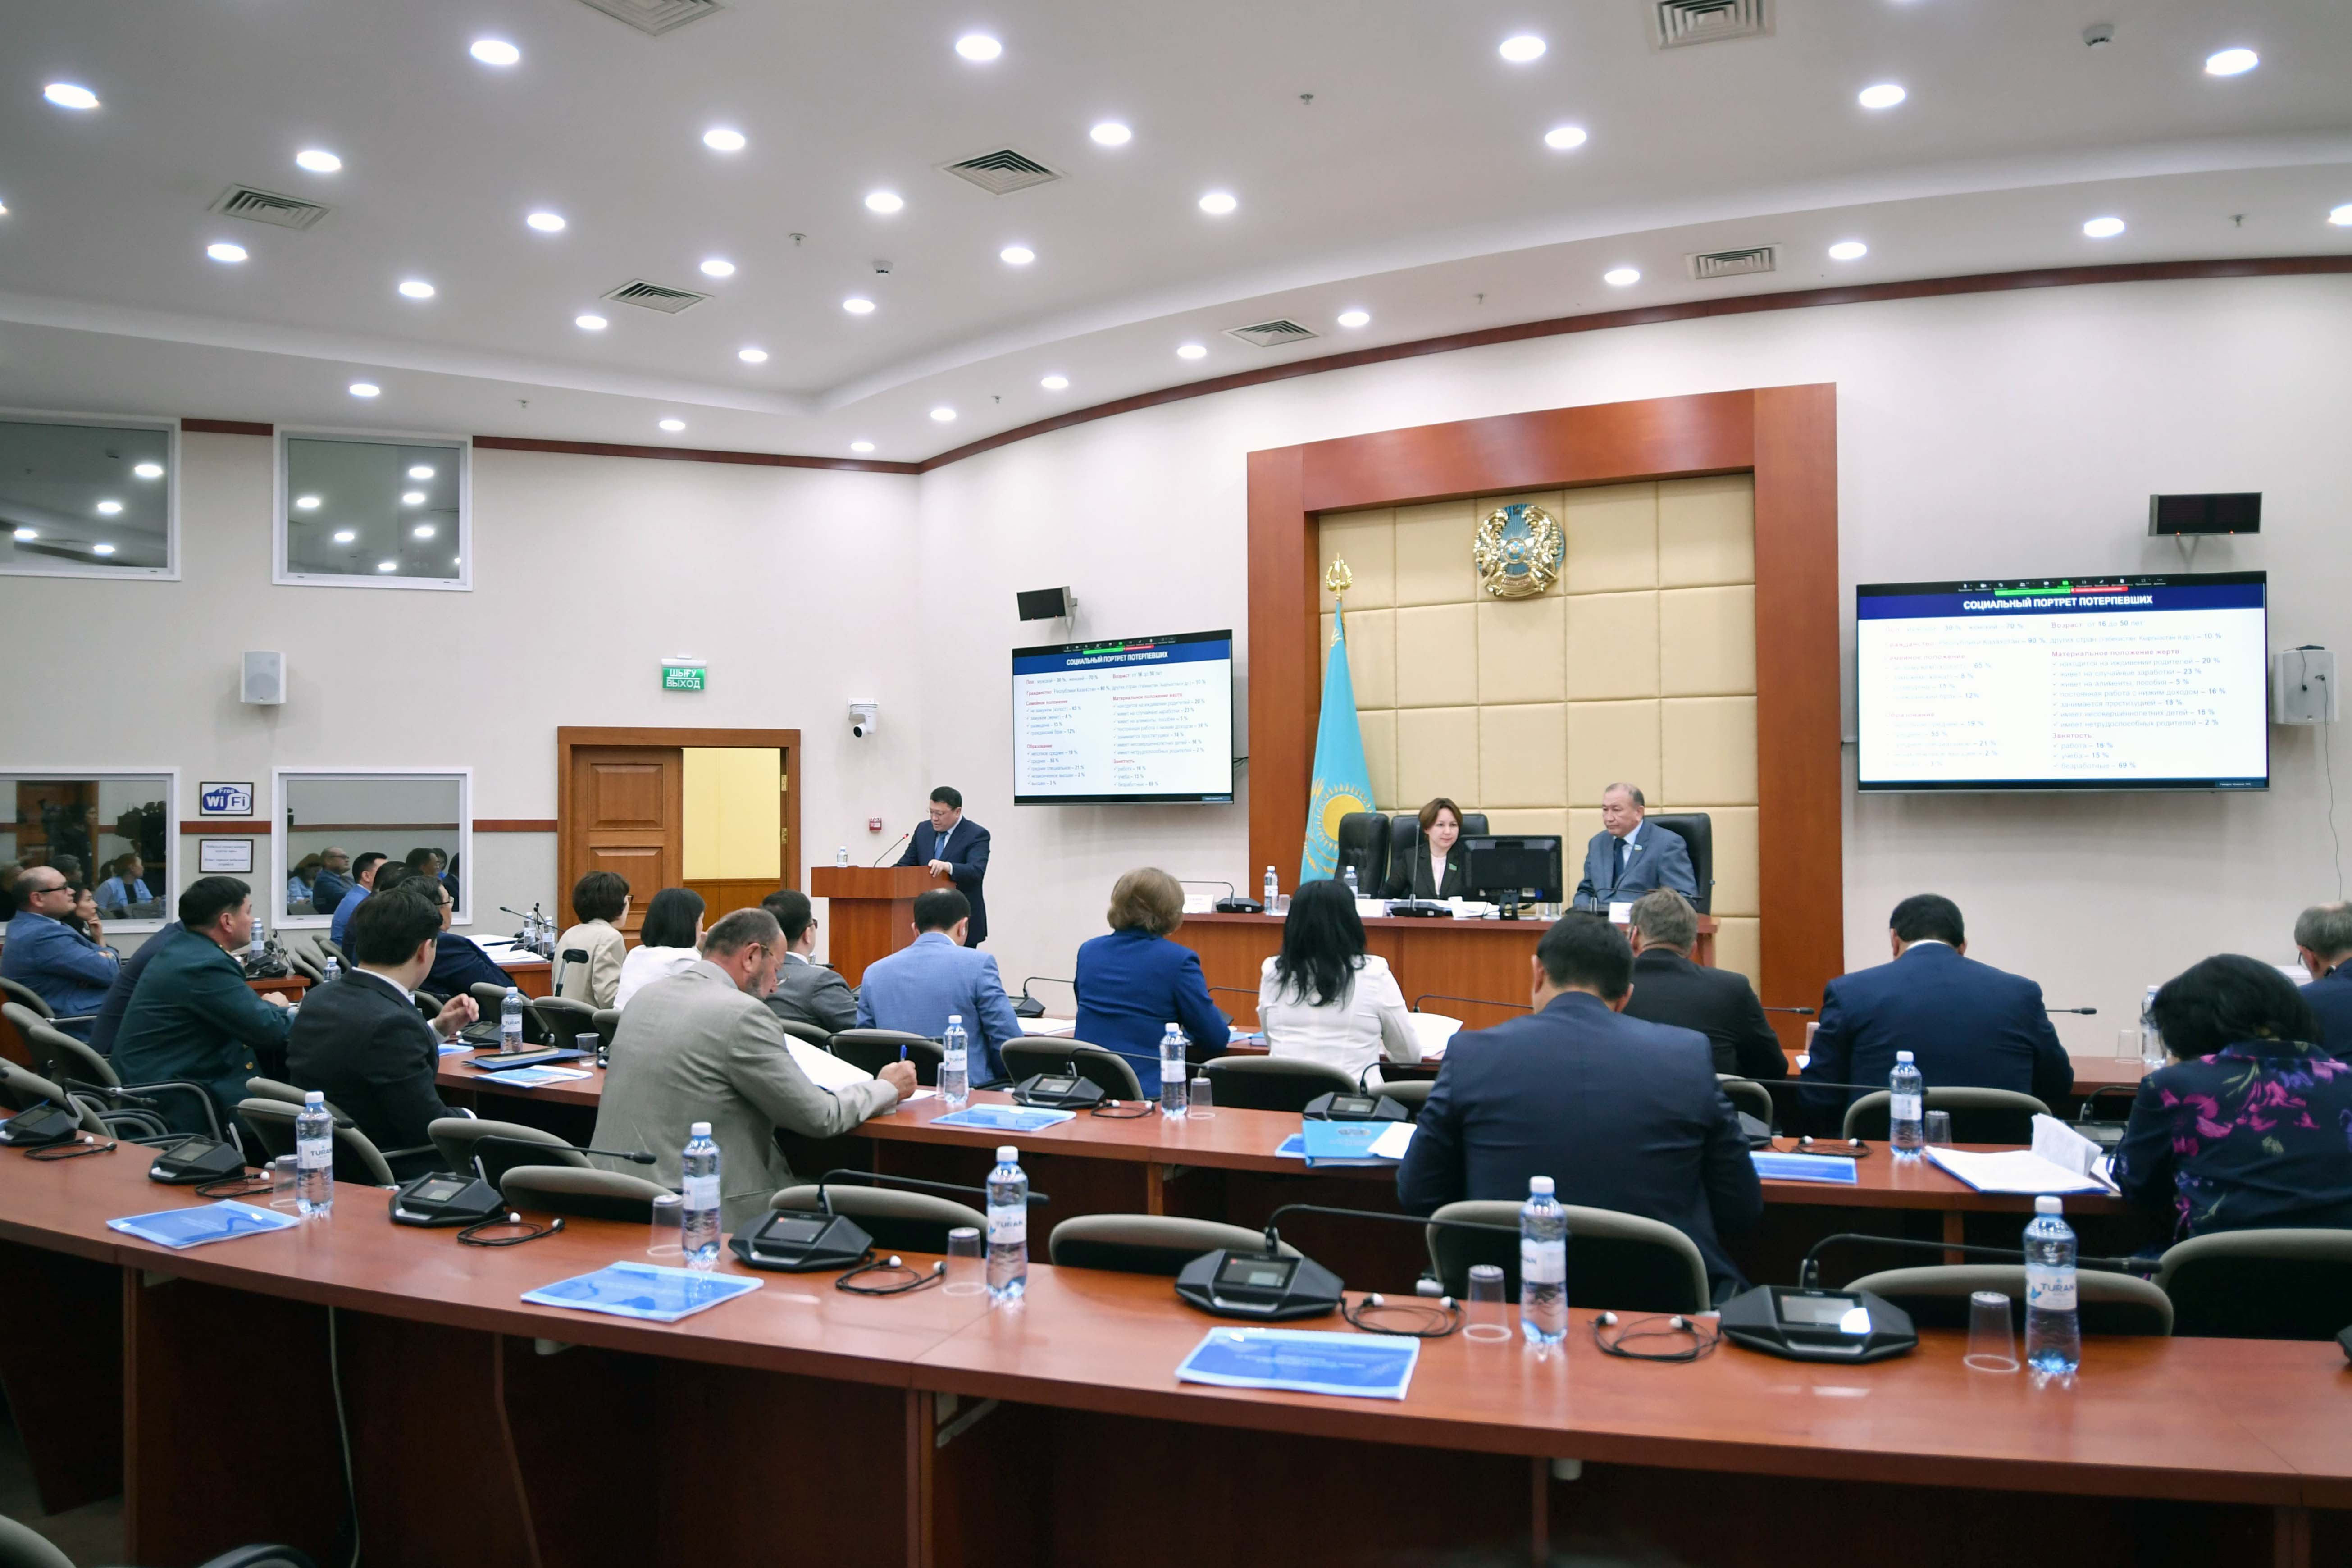 Сегодня в Мажилисе Парламента состоялась презентация законопроекта "О противодействии торговле людьми в Республике Казахстан"